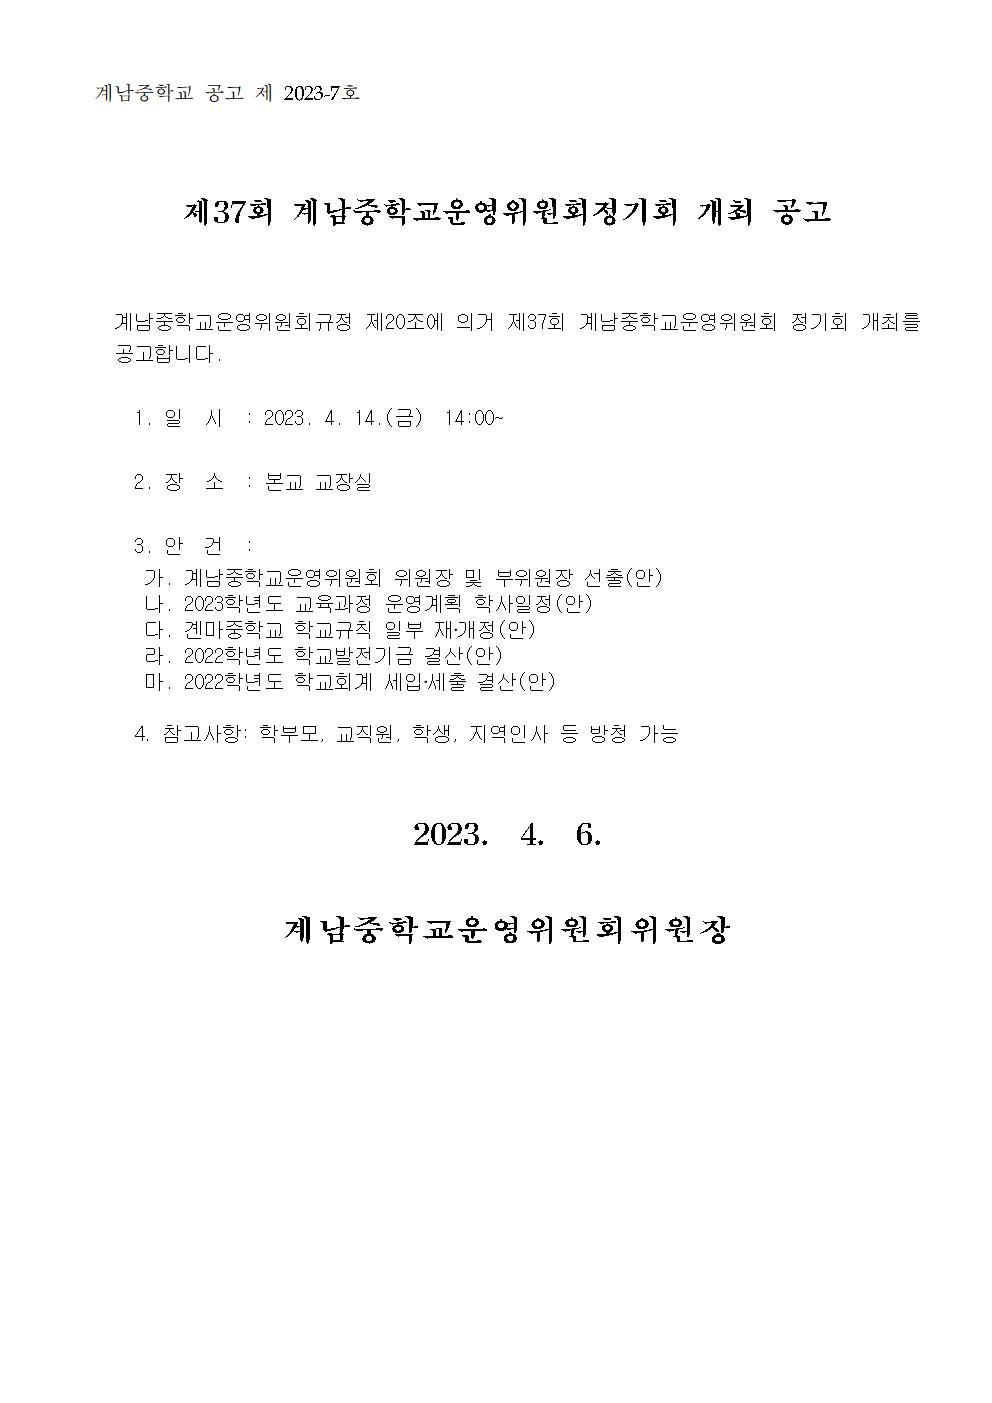 2. 회의개최 공고-37001